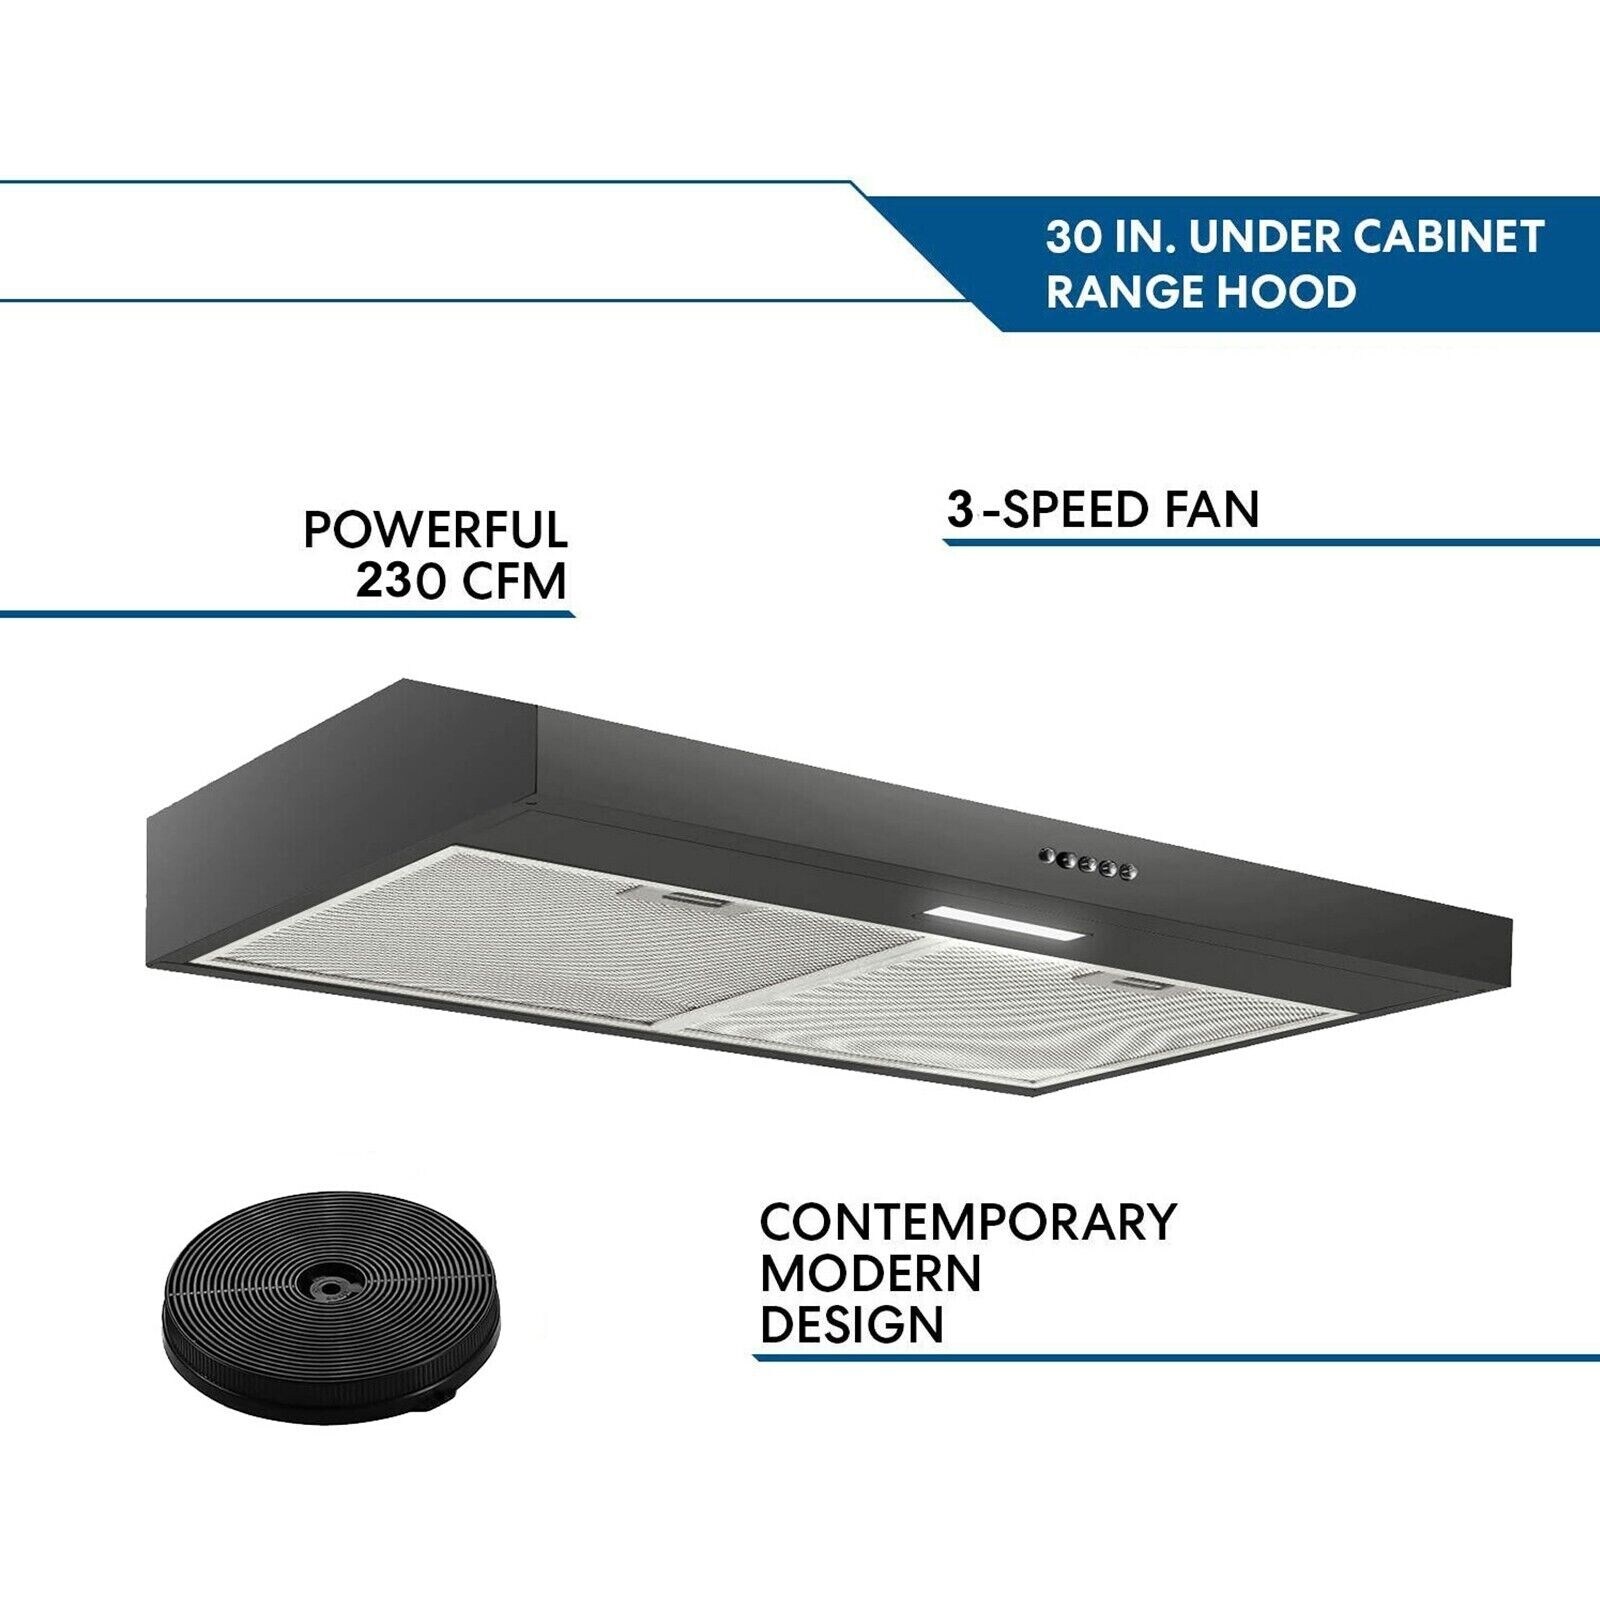 30 inch Under Cabinet Range Hood with Carbon Filter LEDs Light Black 230CFM